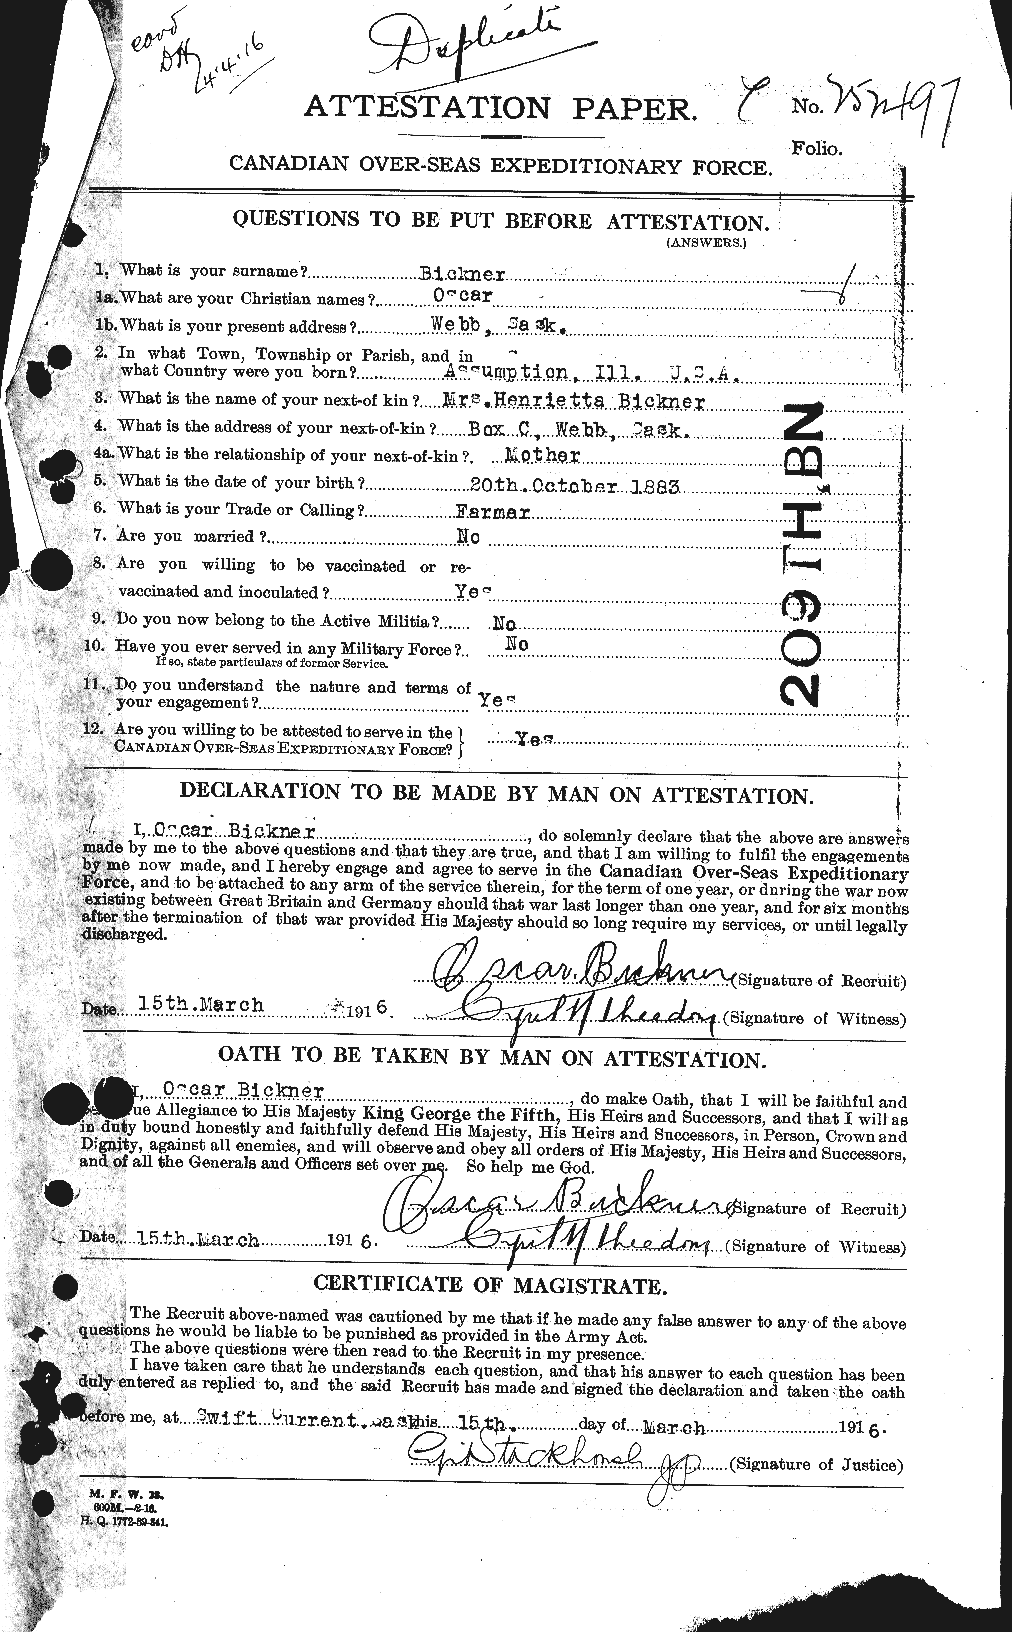 Dossiers du Personnel de la Première Guerre mondiale - CEC 244858a